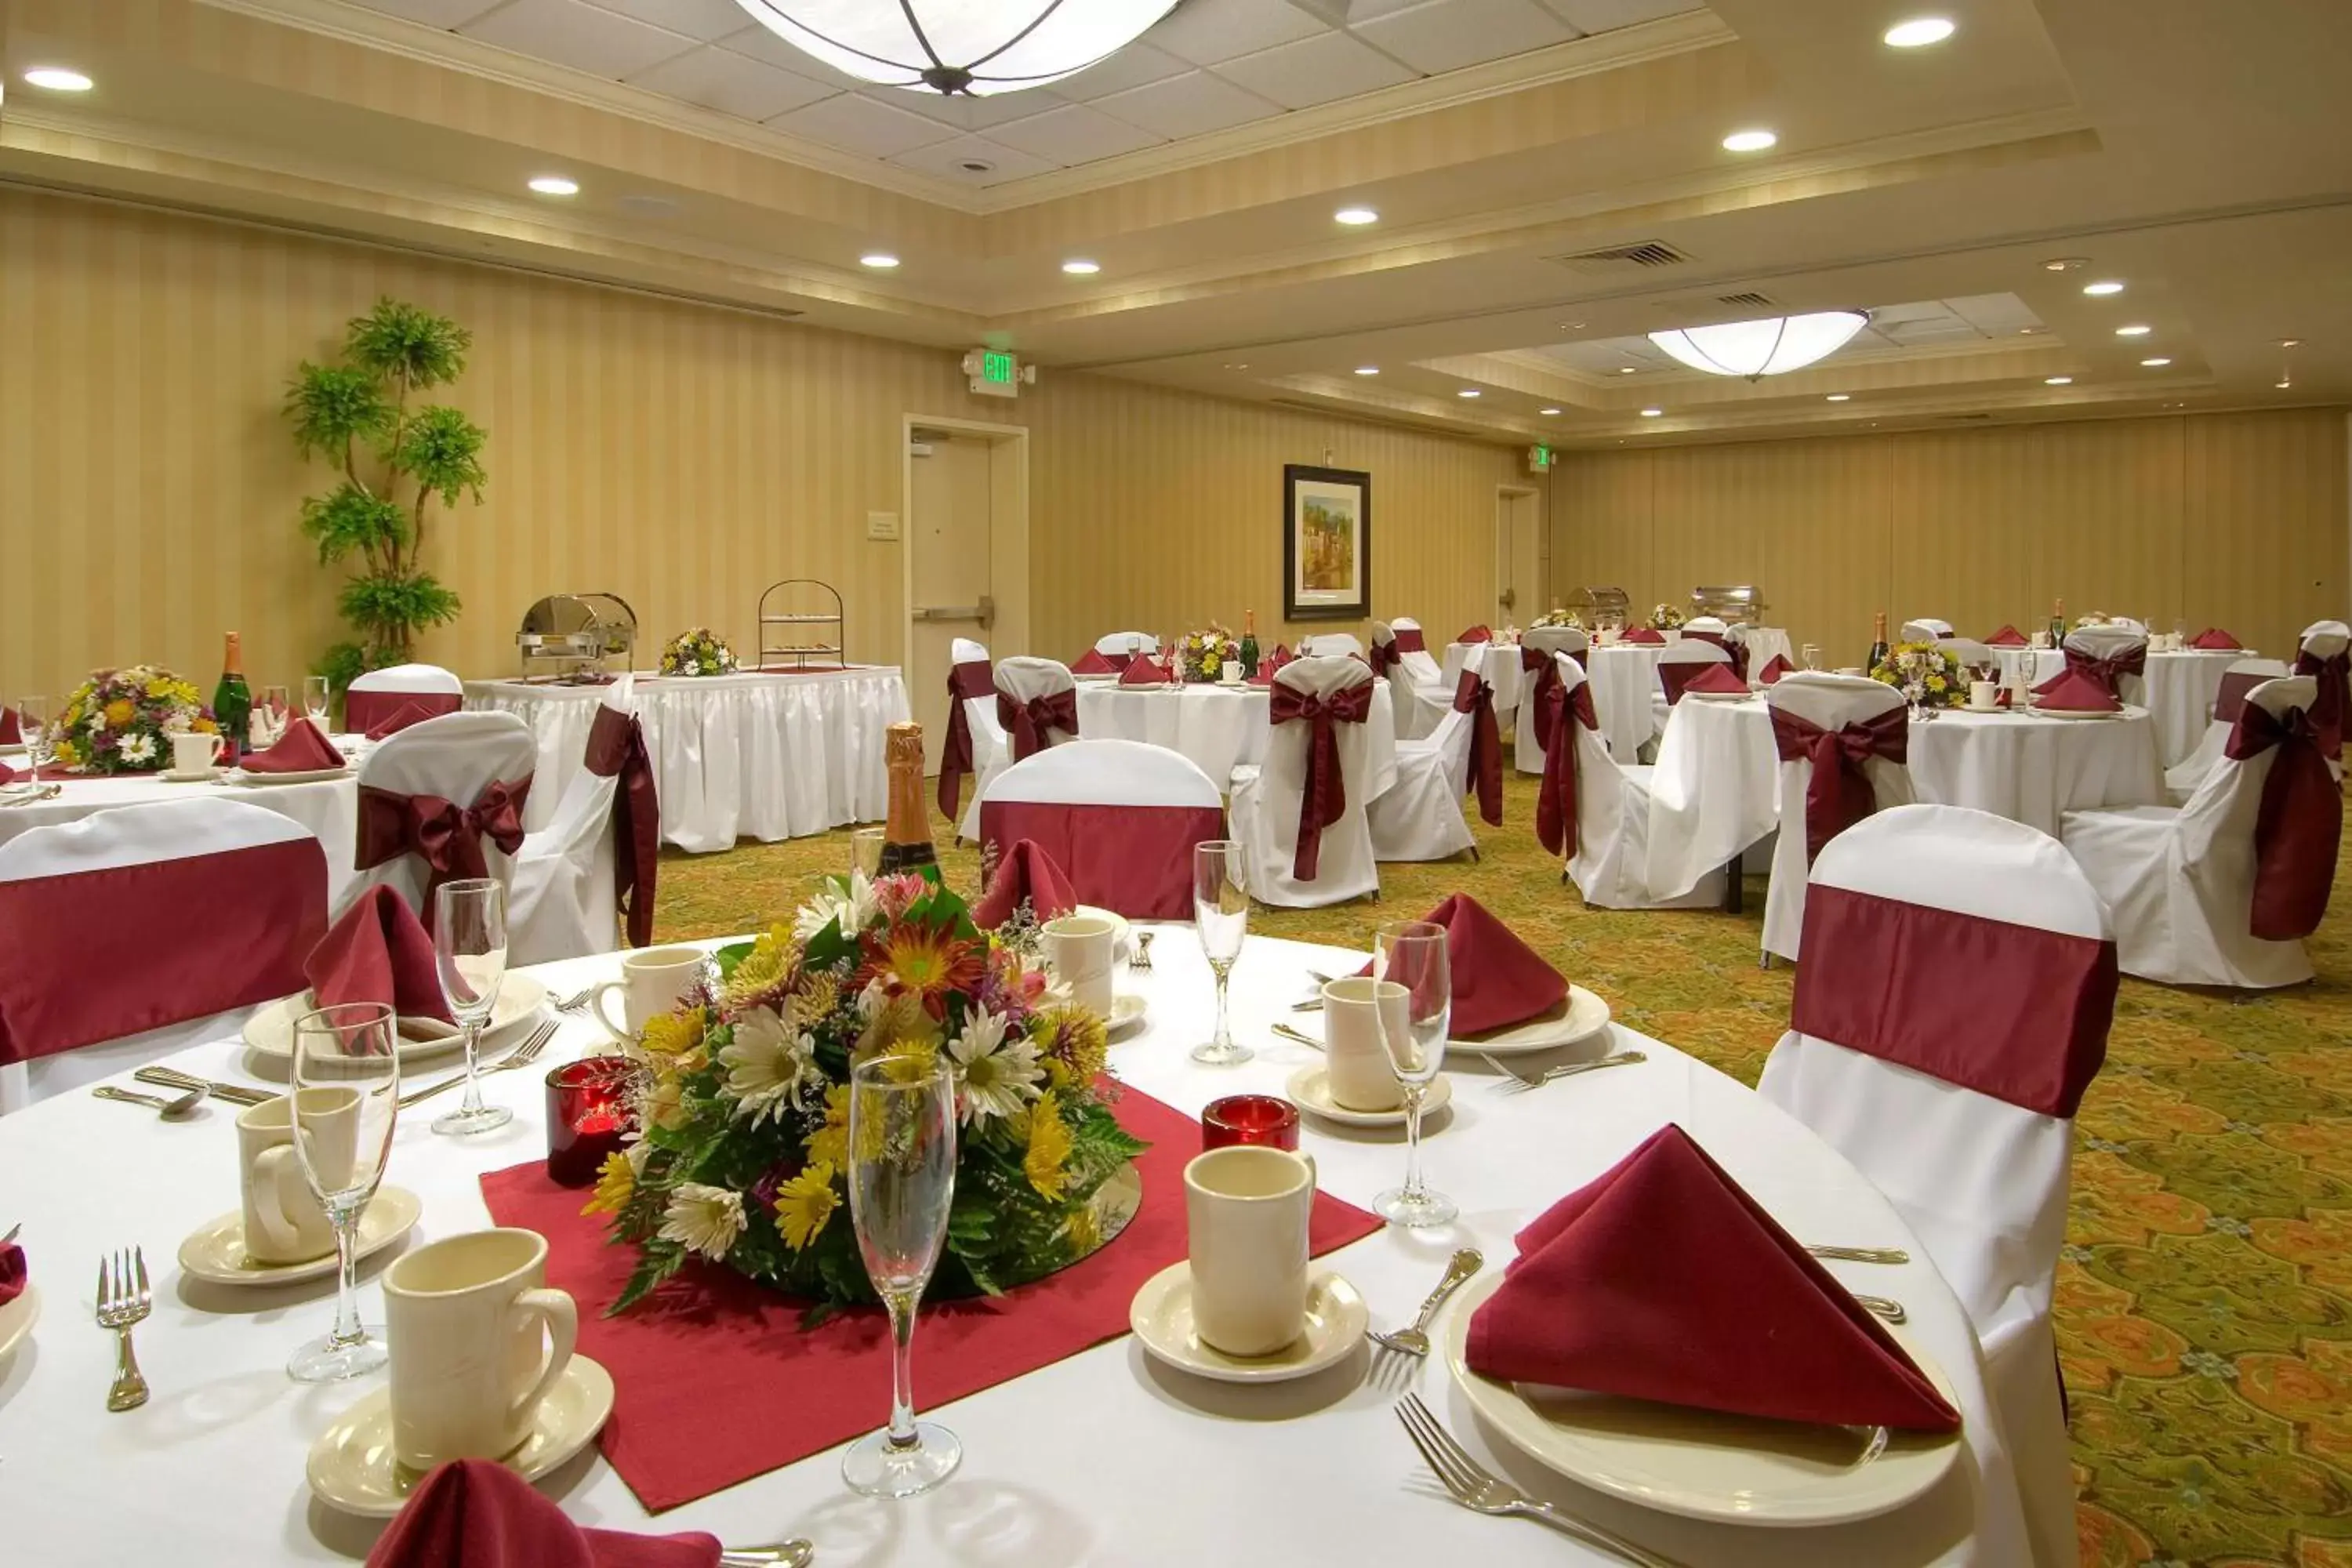 Meeting/conference room, Banquet Facilities in Hilton Garden Inn Sacramento Elk Grove